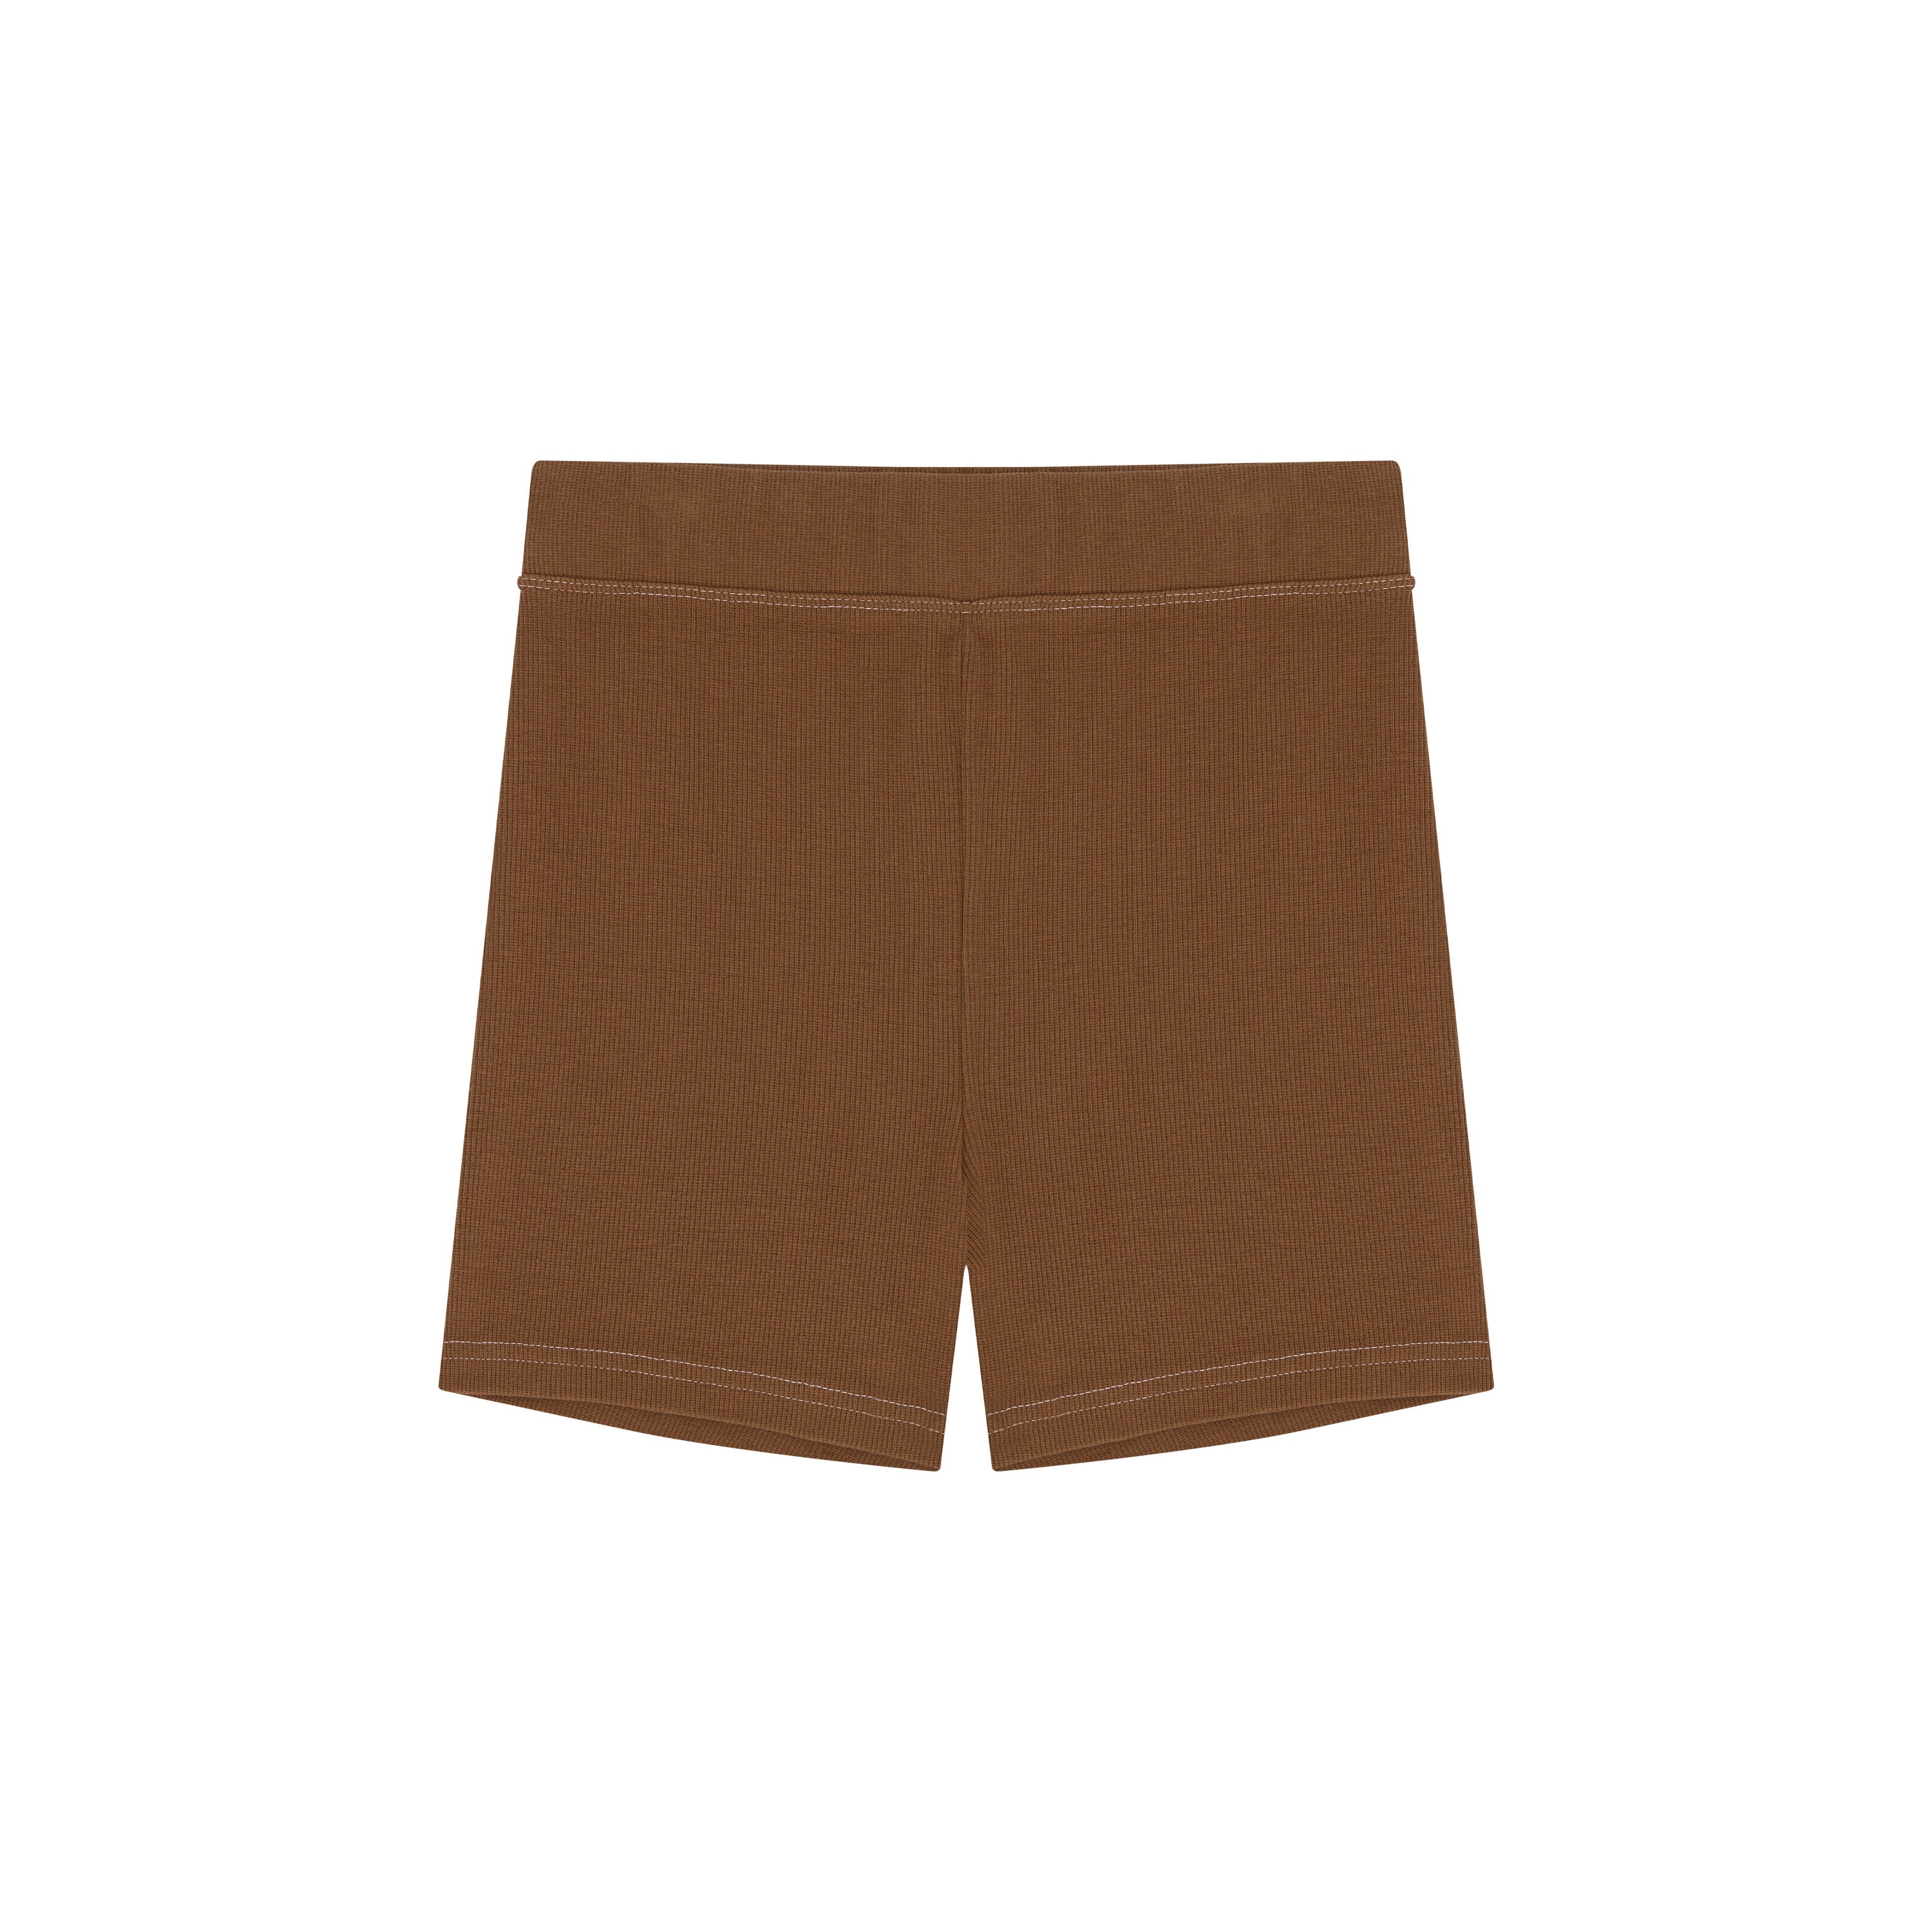 Cameltoe Shorts -  Singapore